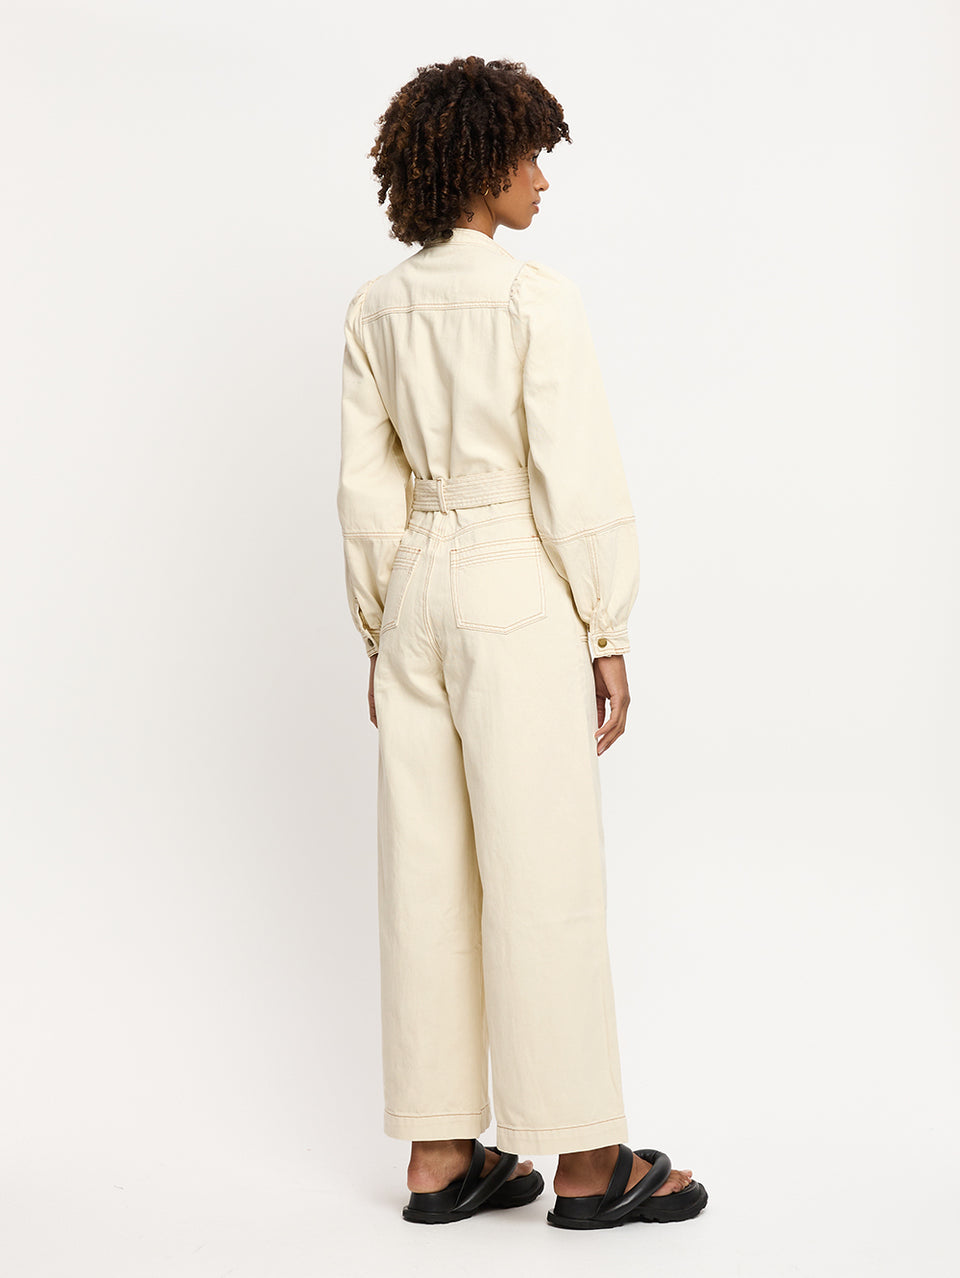 Lourdes Boilersuit Cream KIVARI | Model wears cream denim boilersuit back view